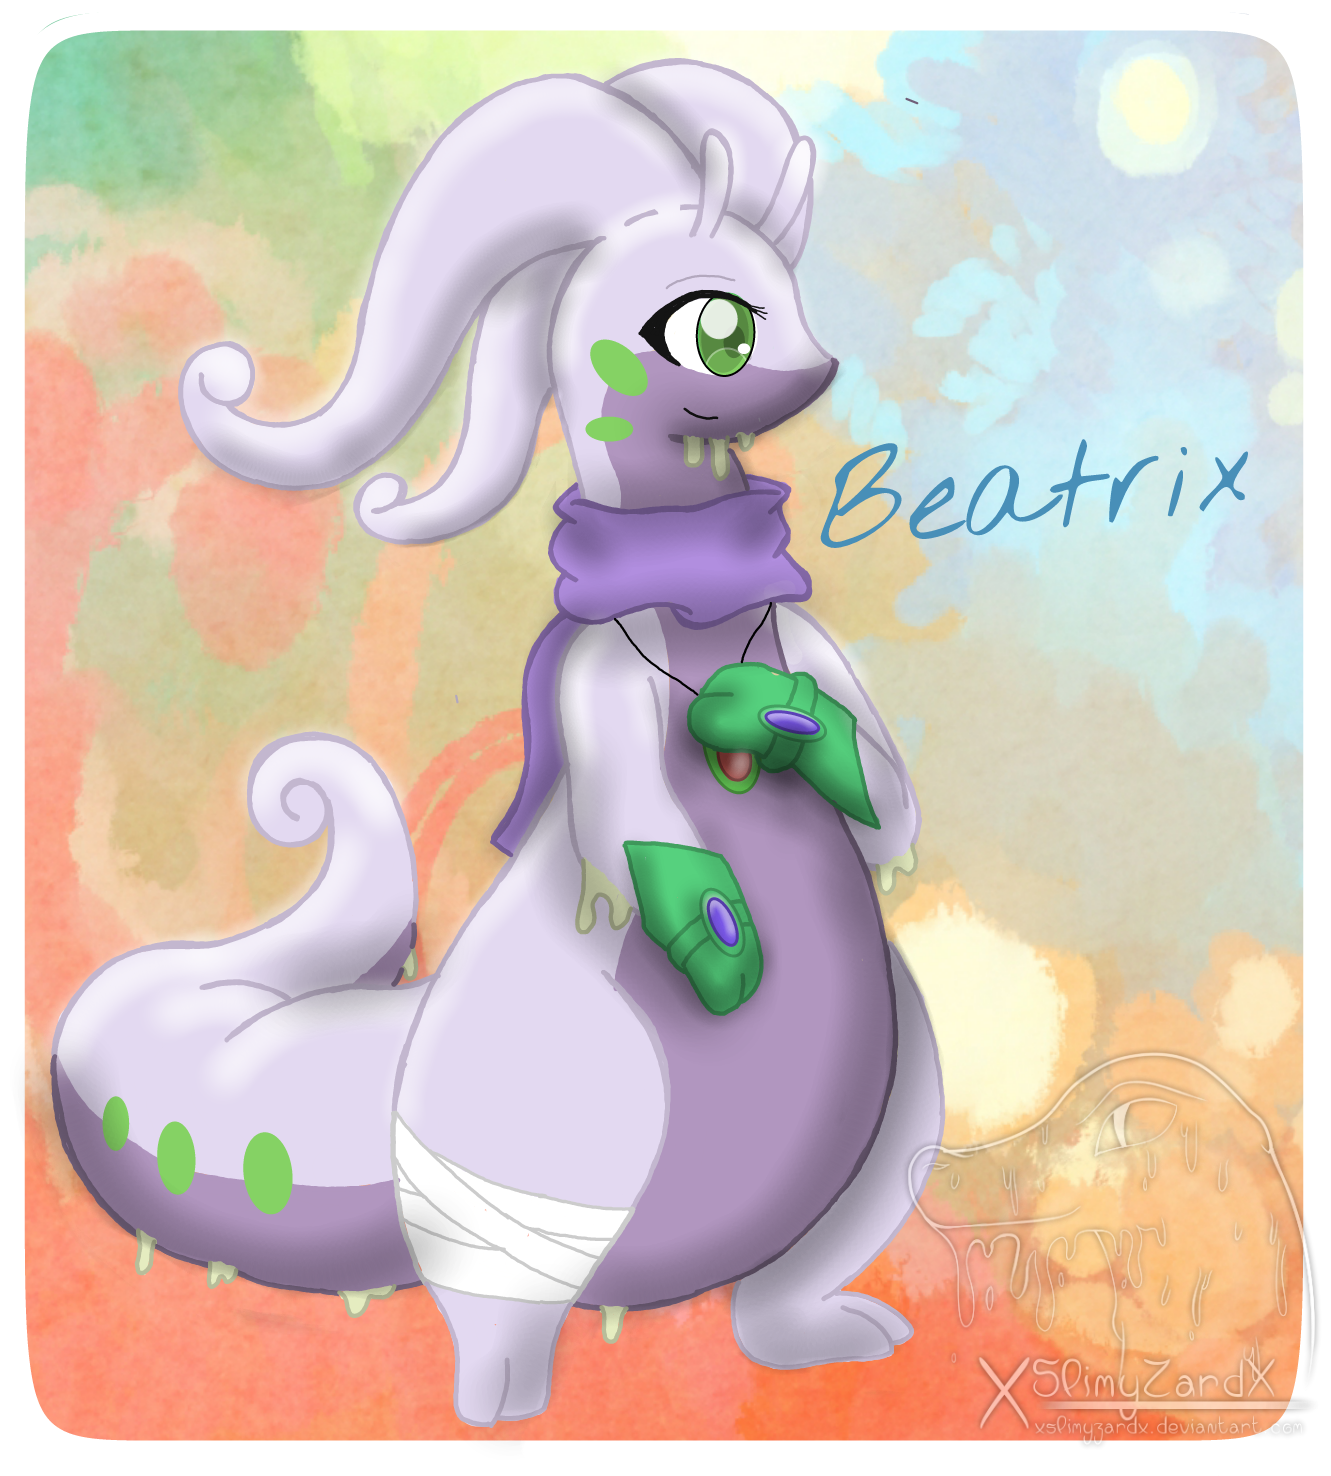 Beatrix the Goodra